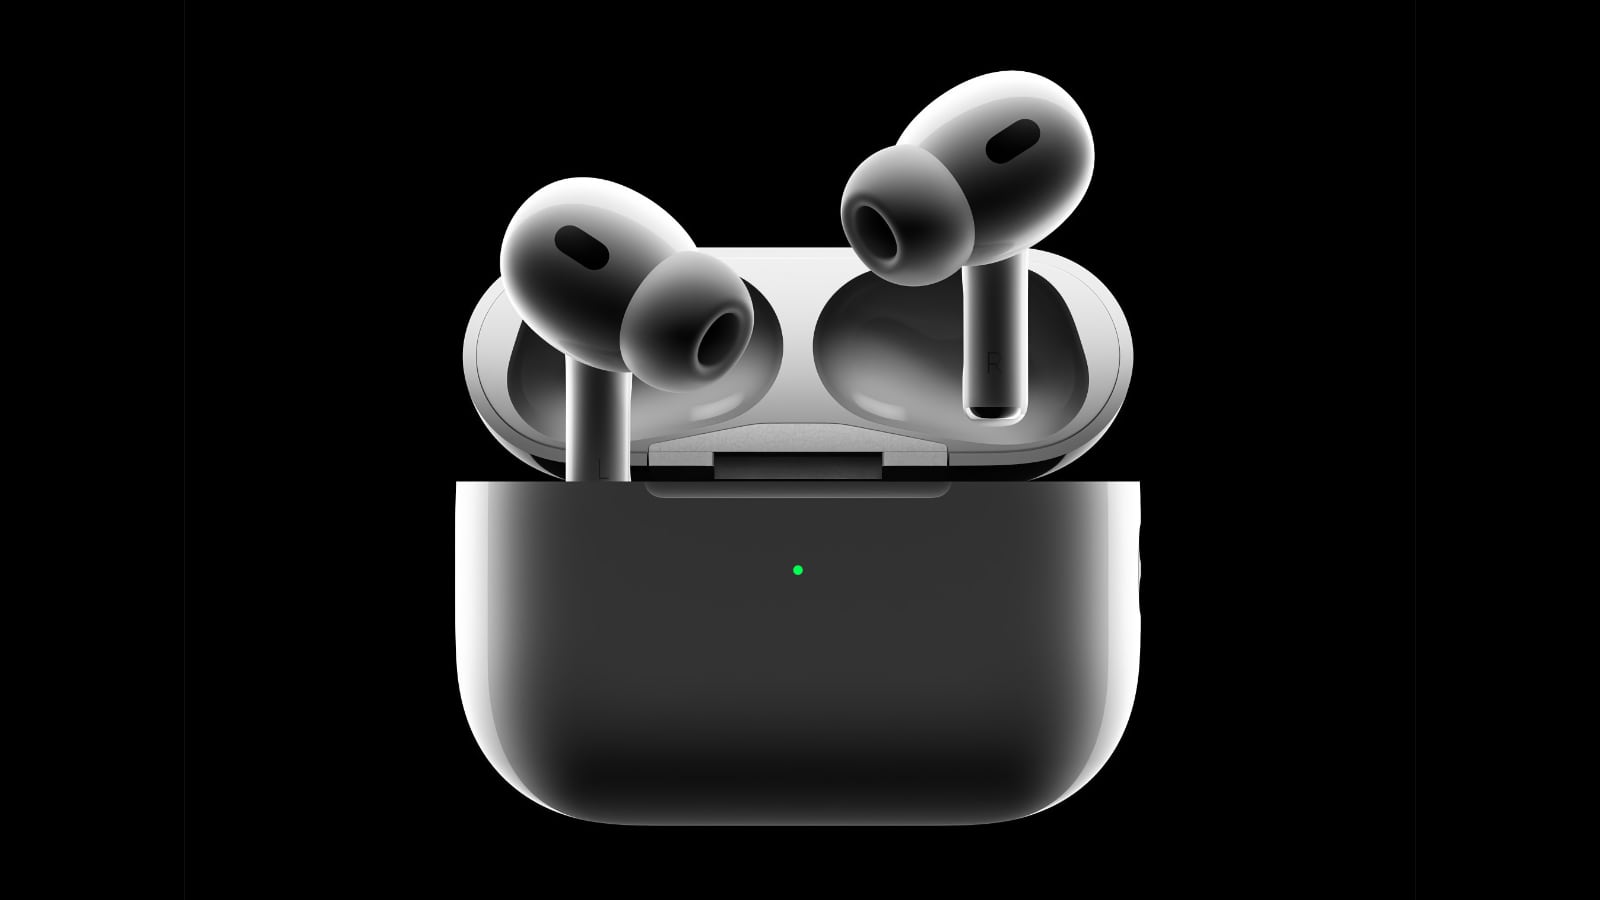 iOS 16 peut détecter les faux AirPods (màj) ! - iPhone Soft